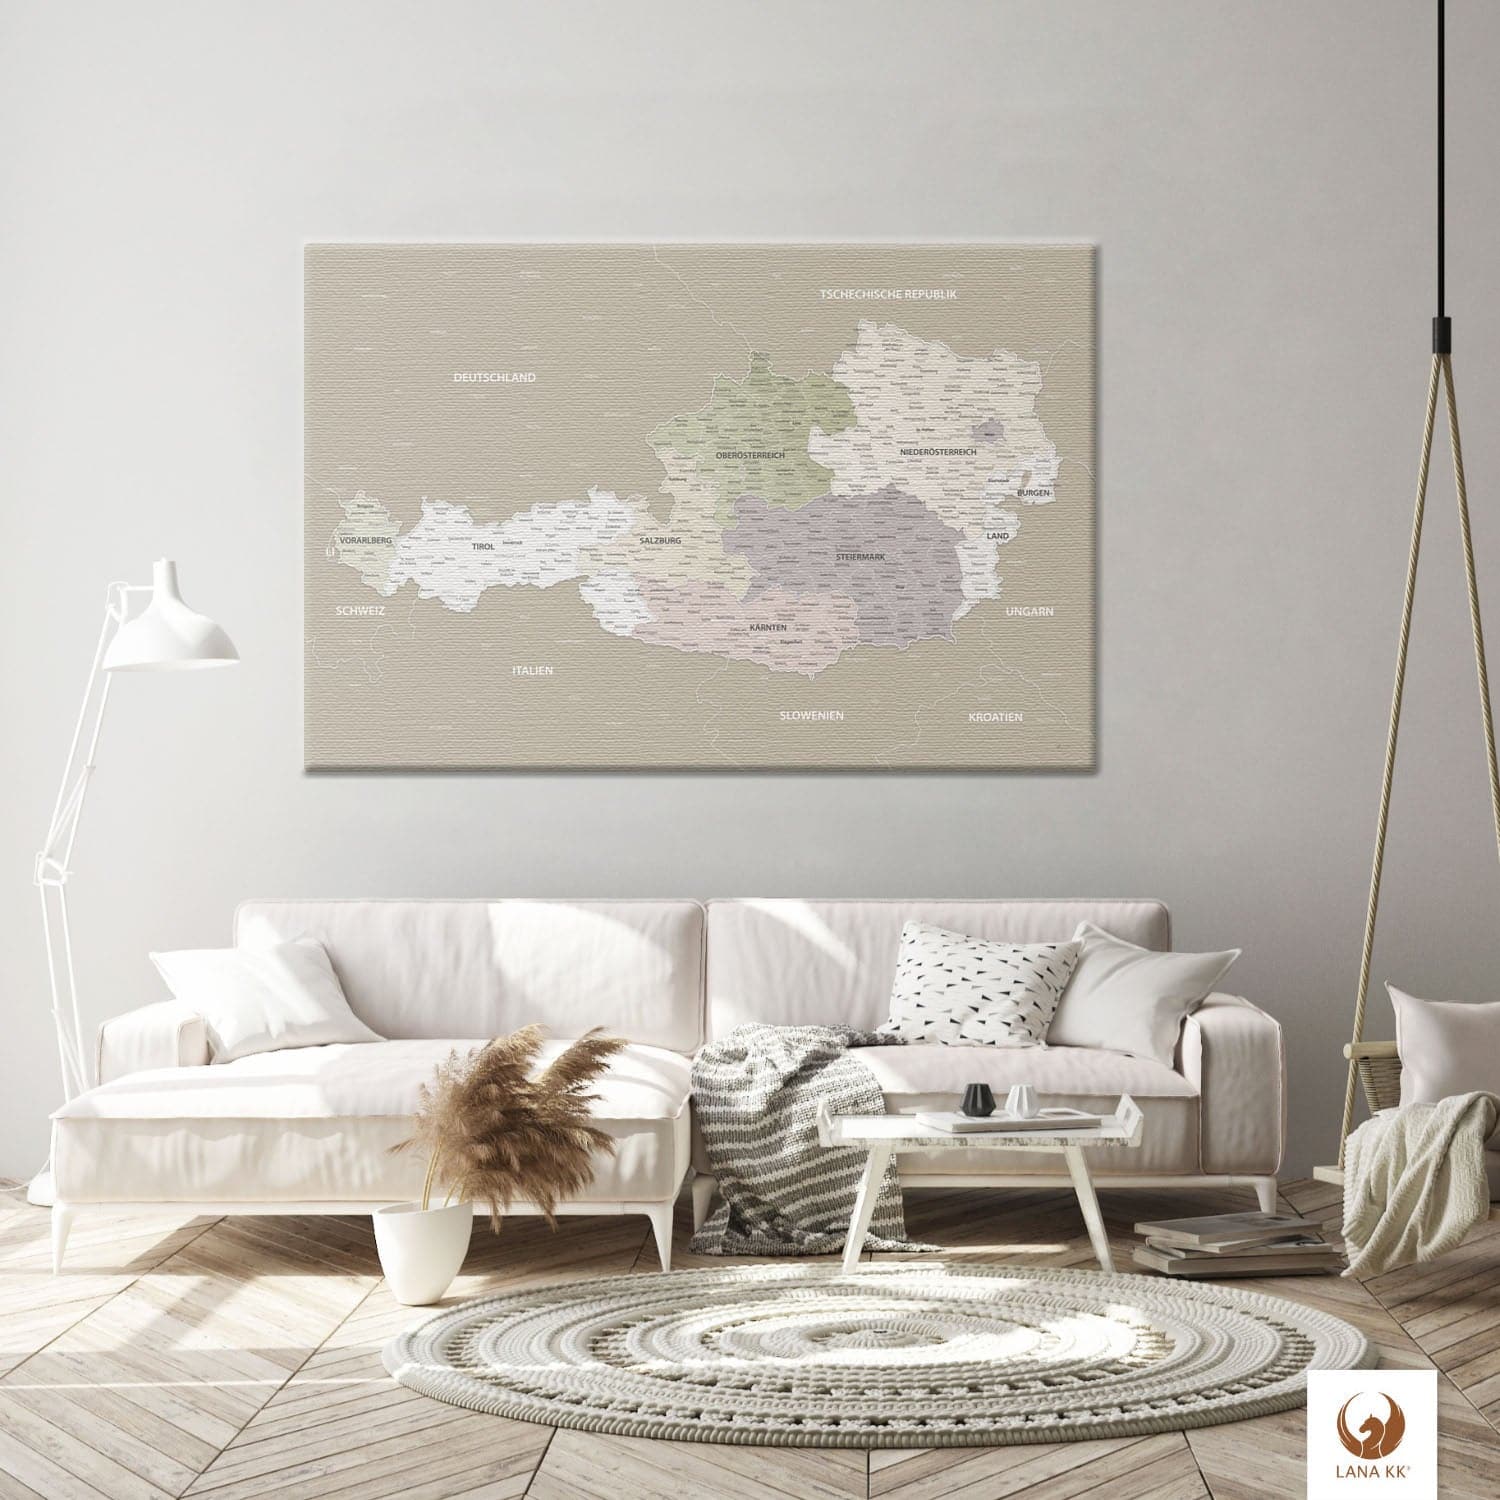 Die Welt als Zentrum Deiner Wohnung. Deine Österreichkarte Grau Sand für sich mit ihren ausgewogenen Farben ideal in Dein Wohnkonzept ein.